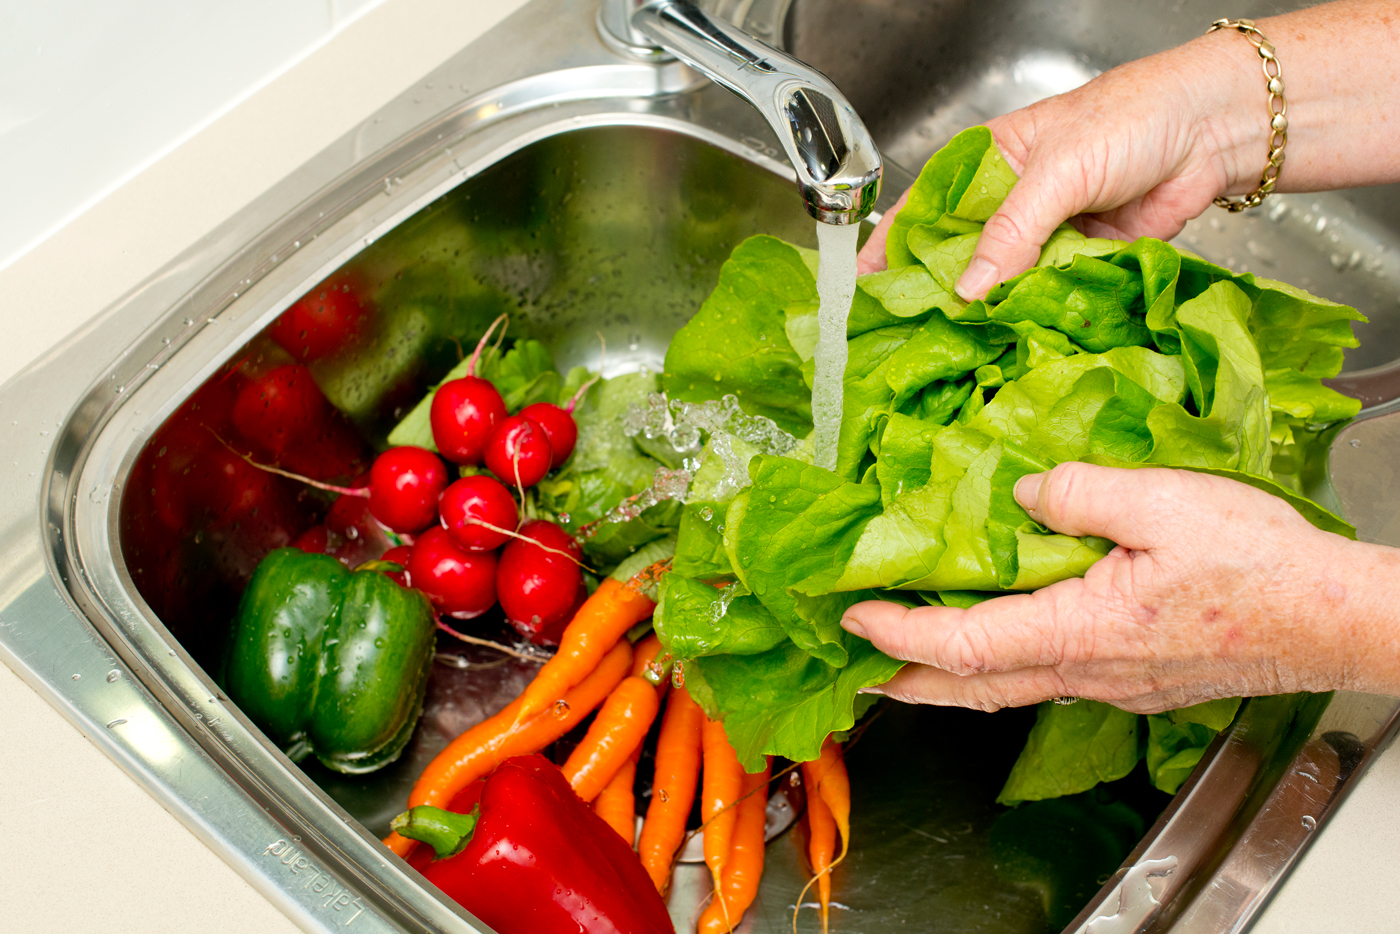 Washing vegetables in kitchen sink